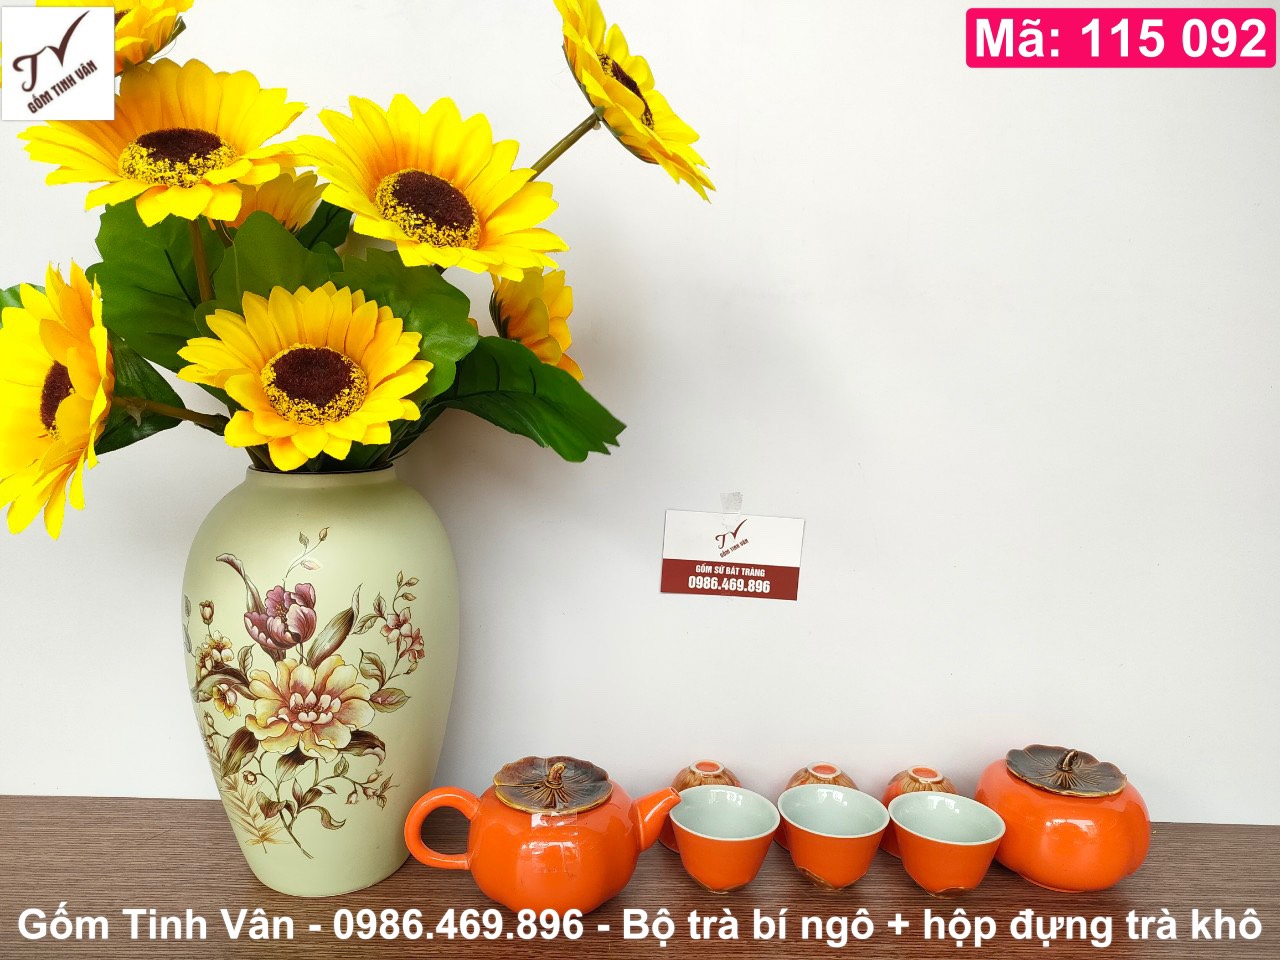 Bộ bình trà bí ngô men cam, mã 115092, gồm 1 ấm 450ml, 6 ly, 1 hộp trà, gốm sứ bát tràng tinh vân